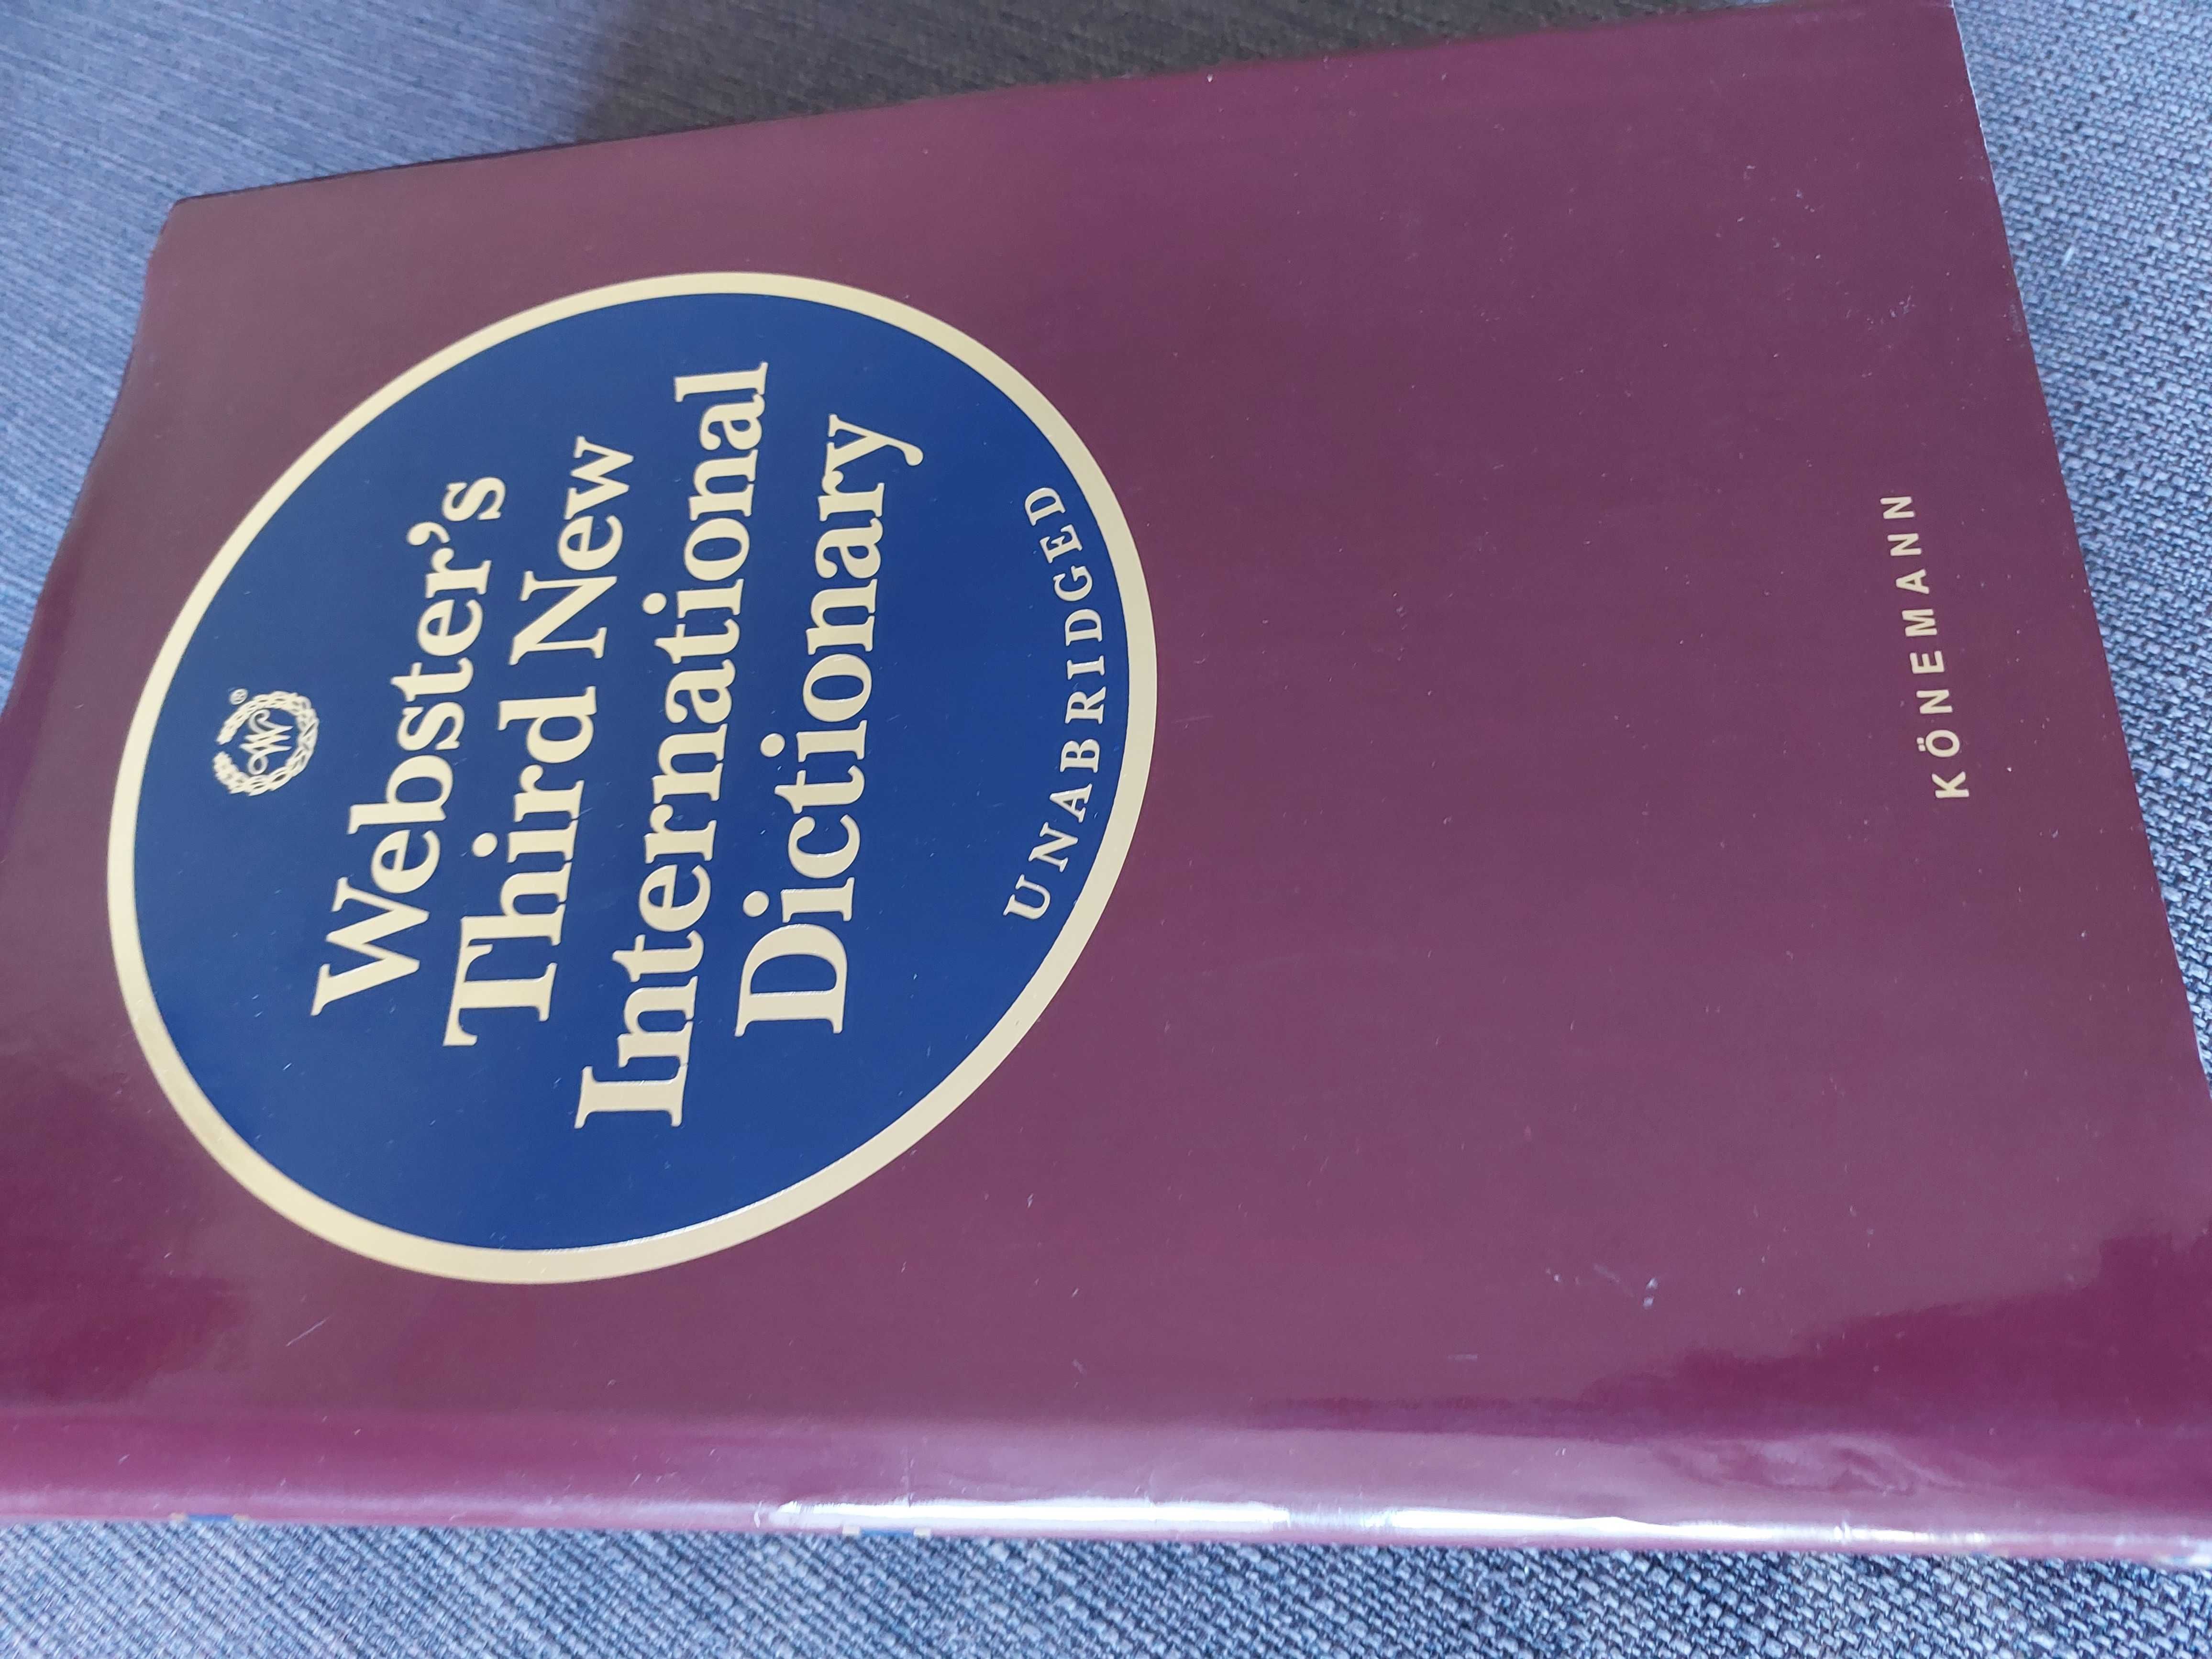 wielki słownik angielski Webster's Third New International Dictionary